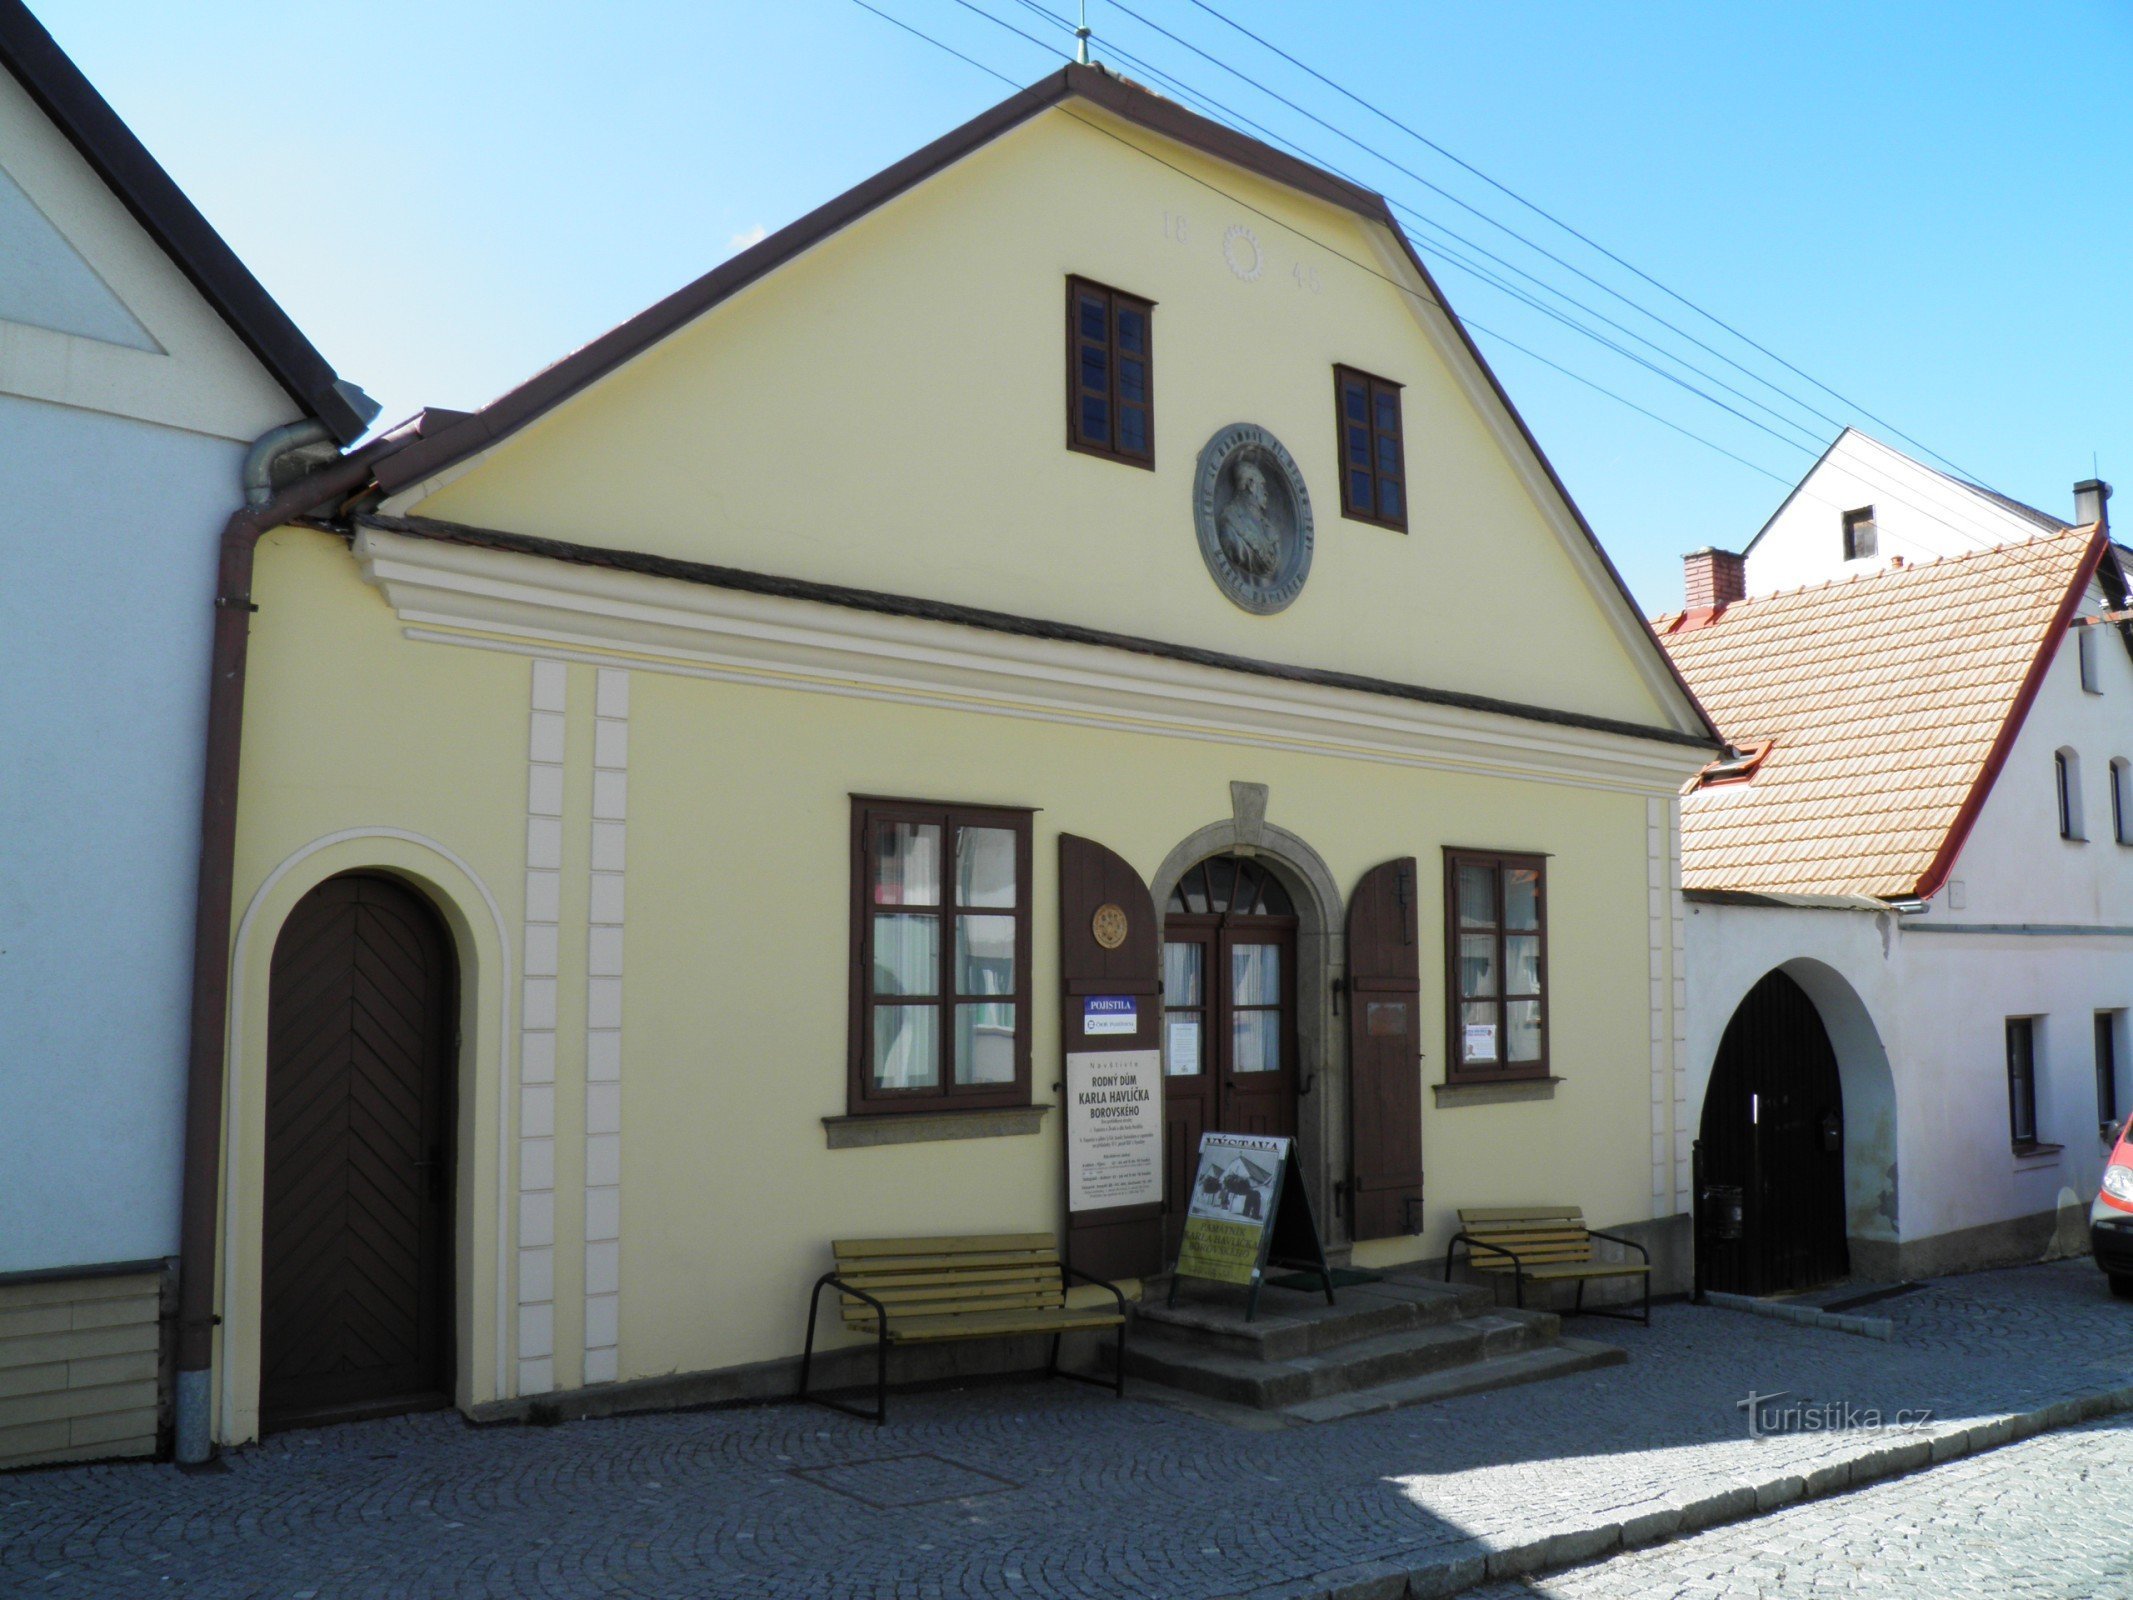 The birthplace of KH Borovský.